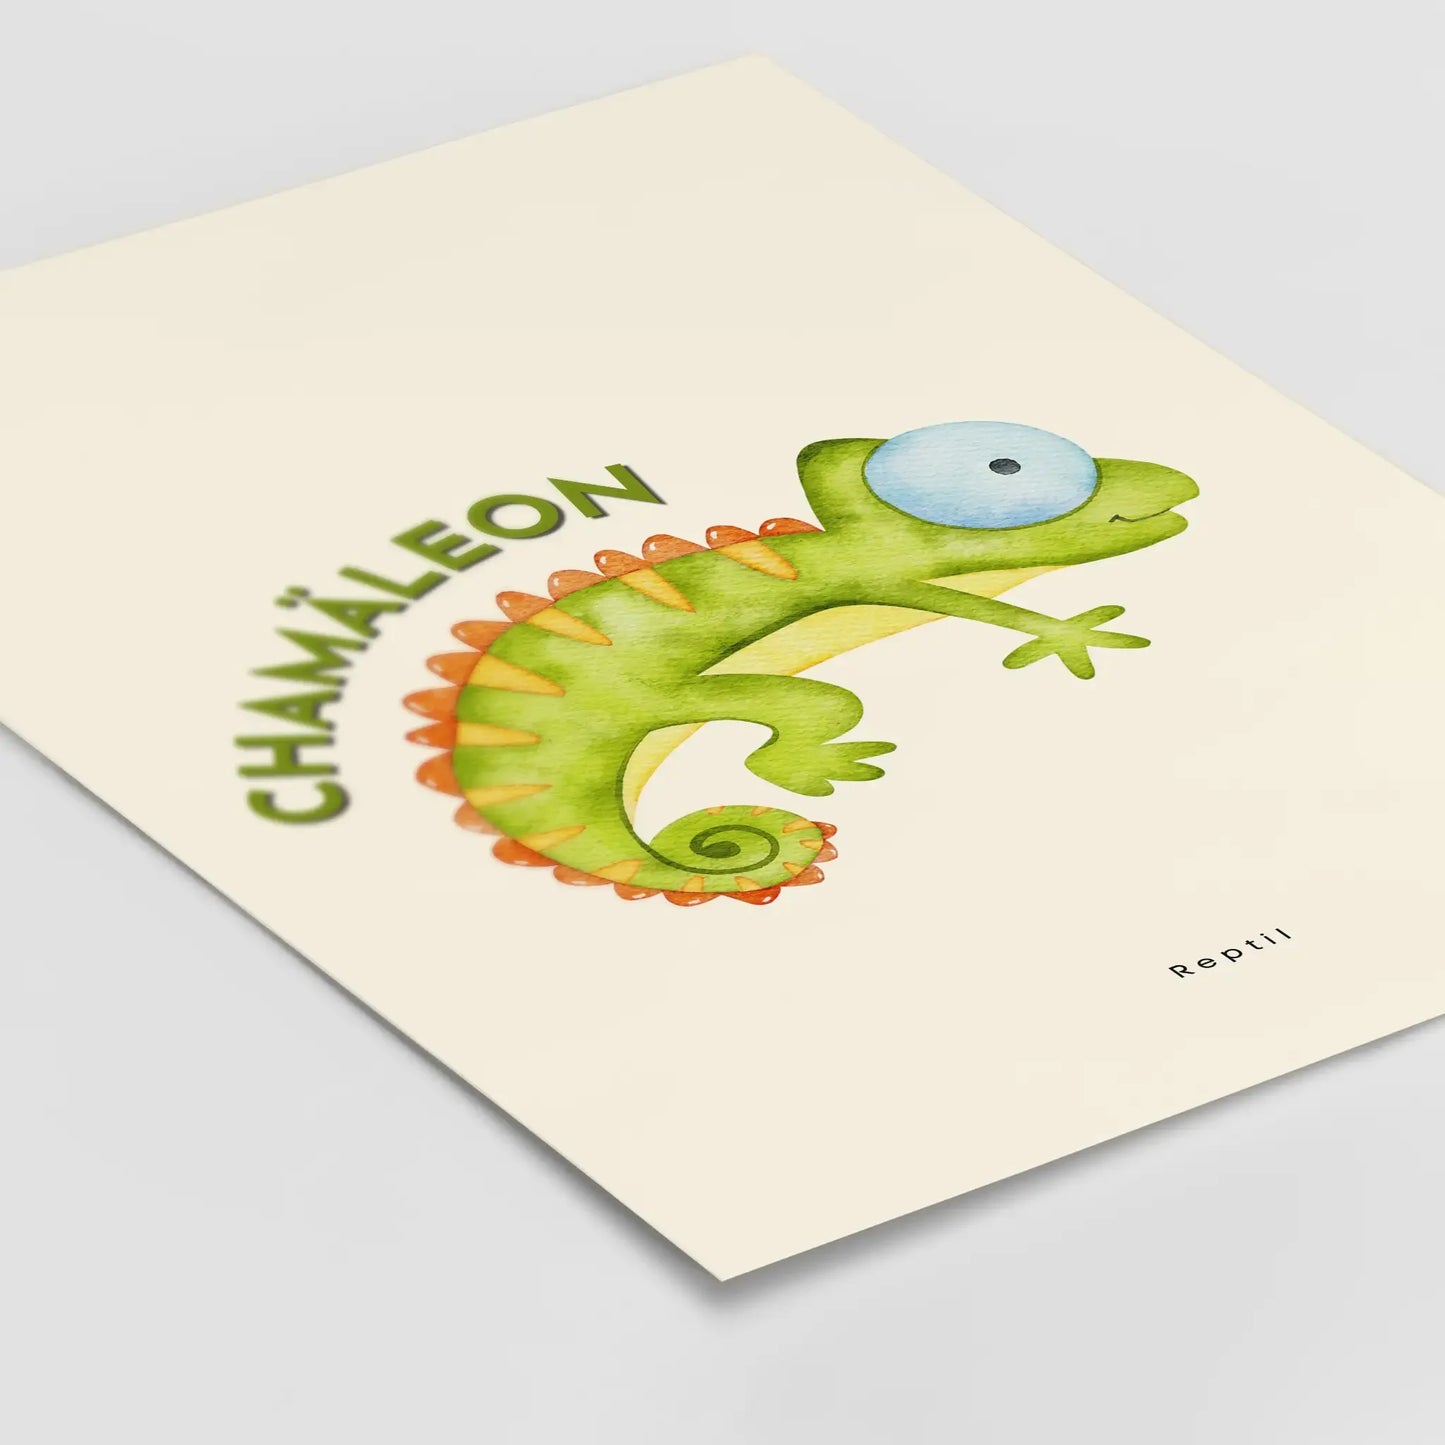 Chameleon poster